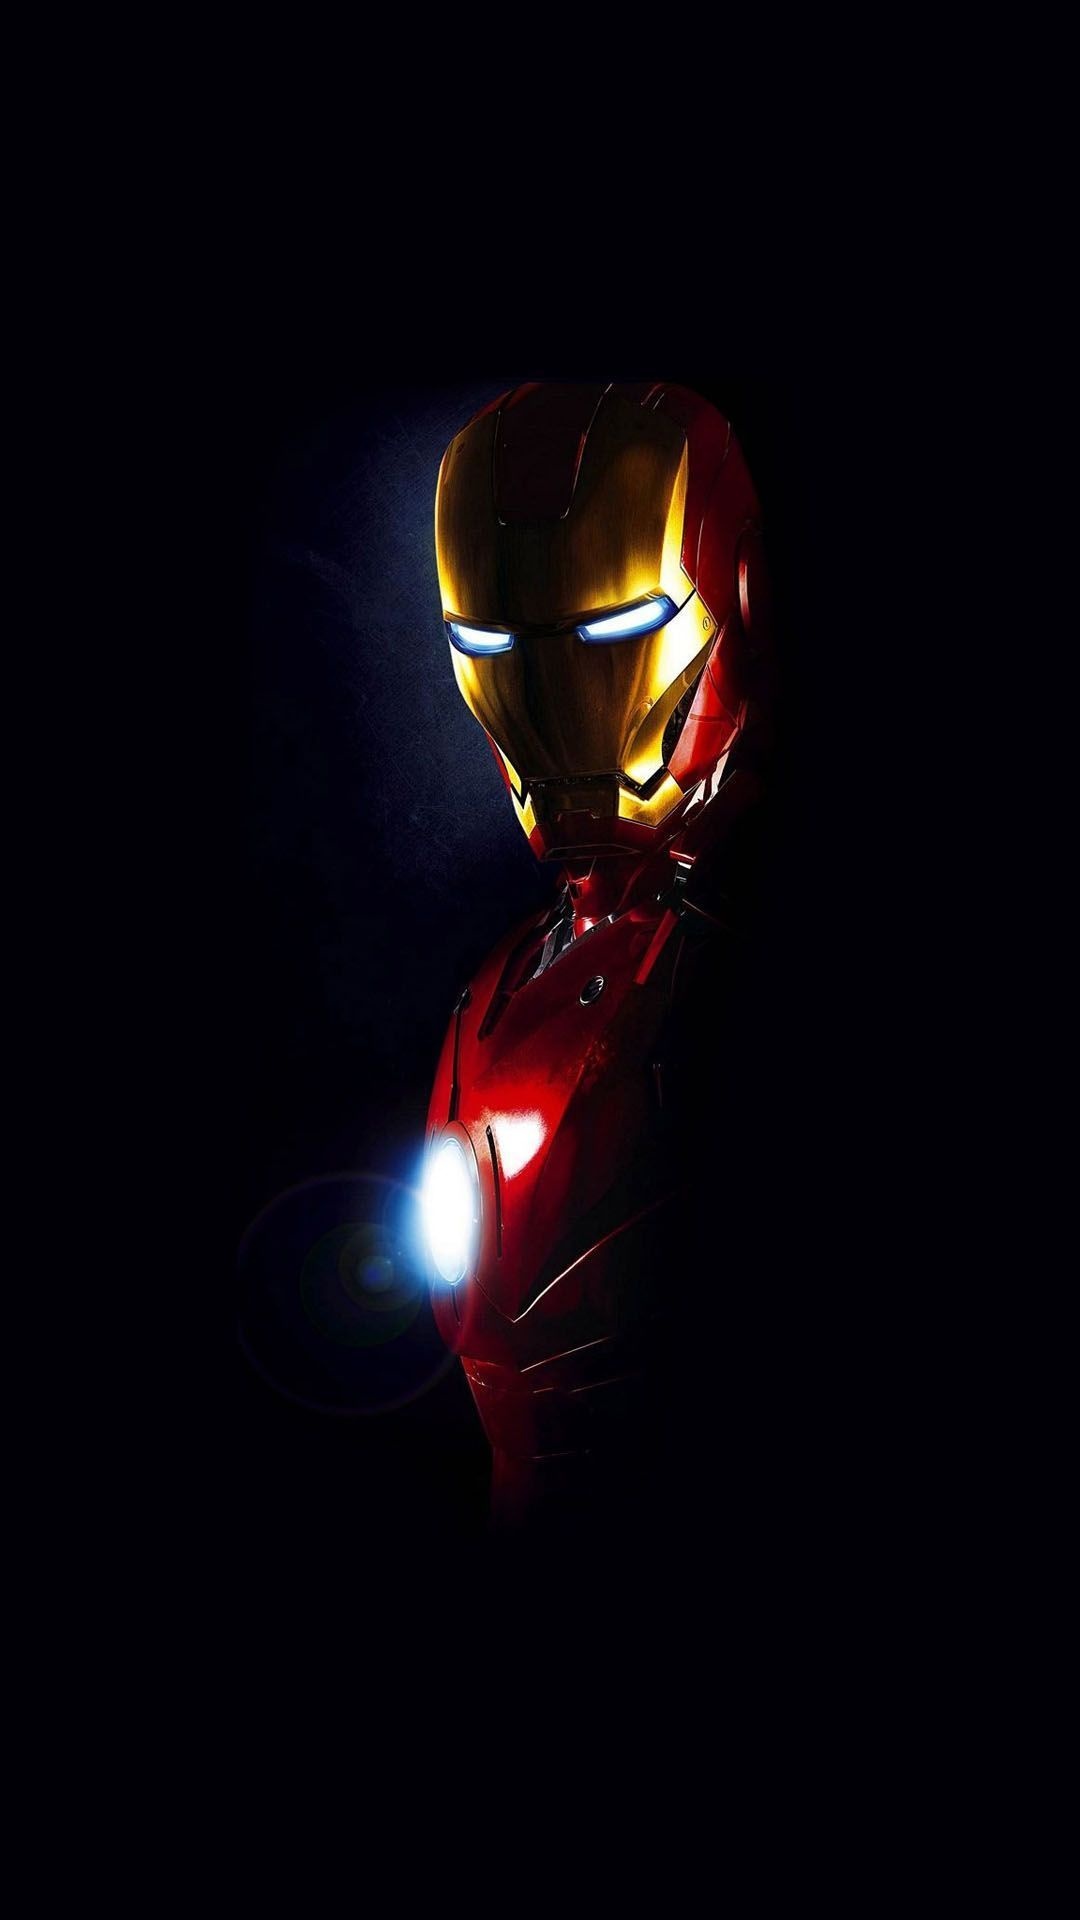 Iron Man Suit, Futuristic design, Technological marvel, Superhero genius, 1080x1920 Full HD Phone